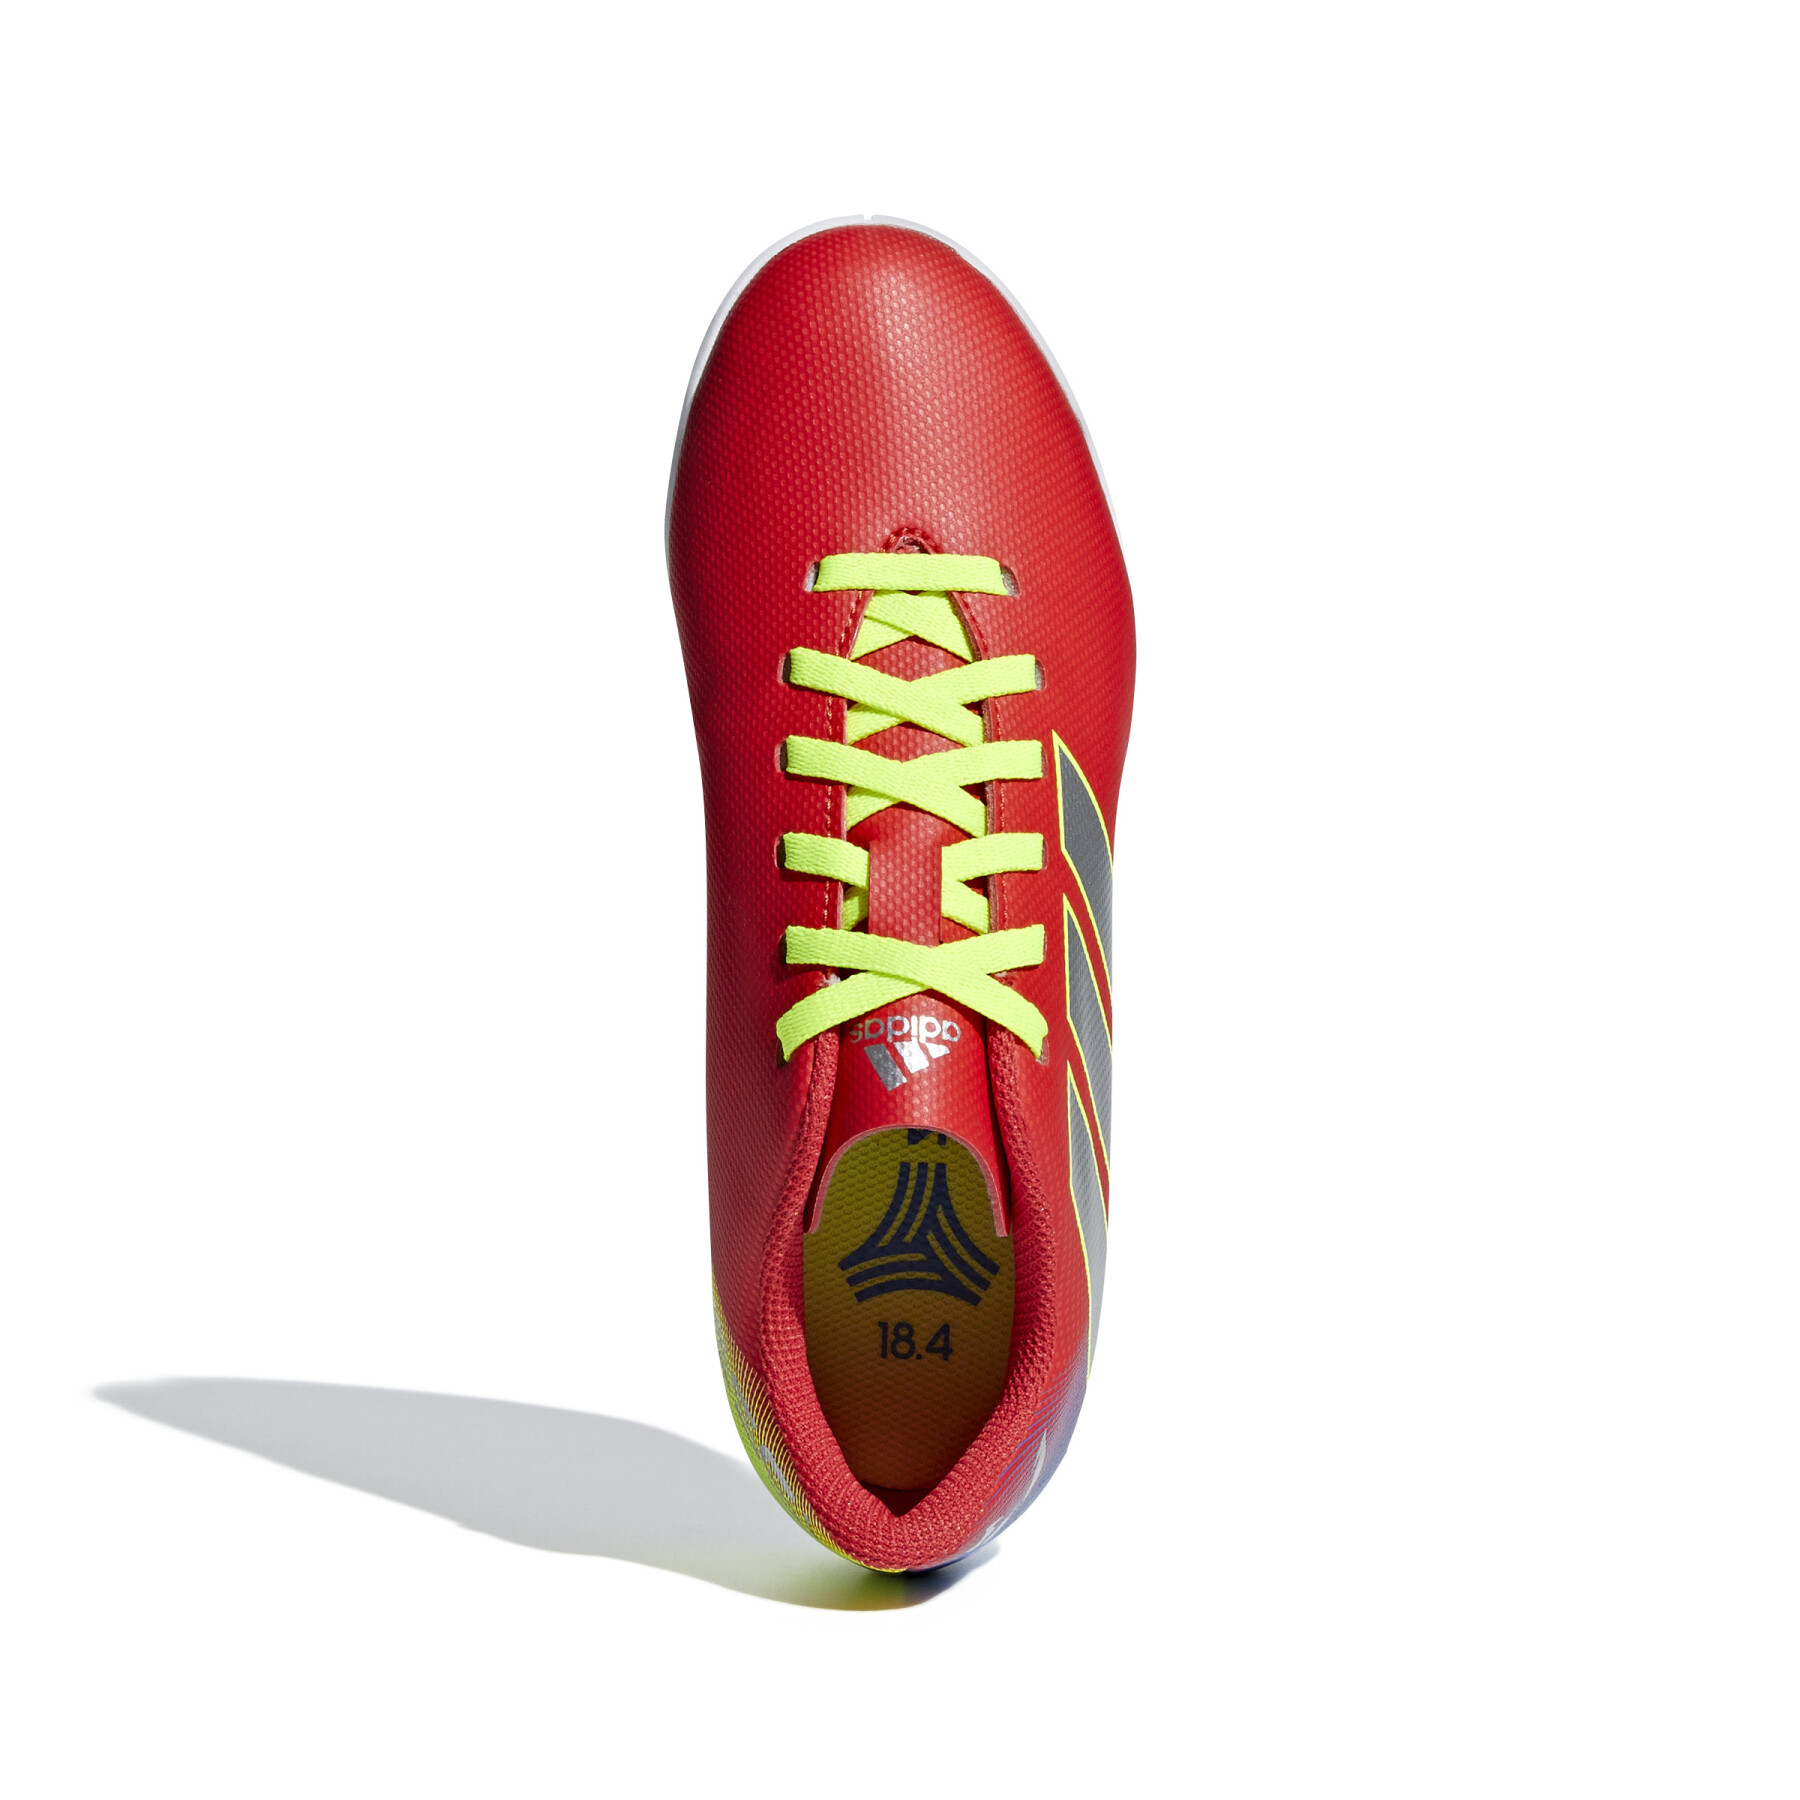 Botas de fútbol para niños adidas Nemeziz Messi Tango 18.4 IN